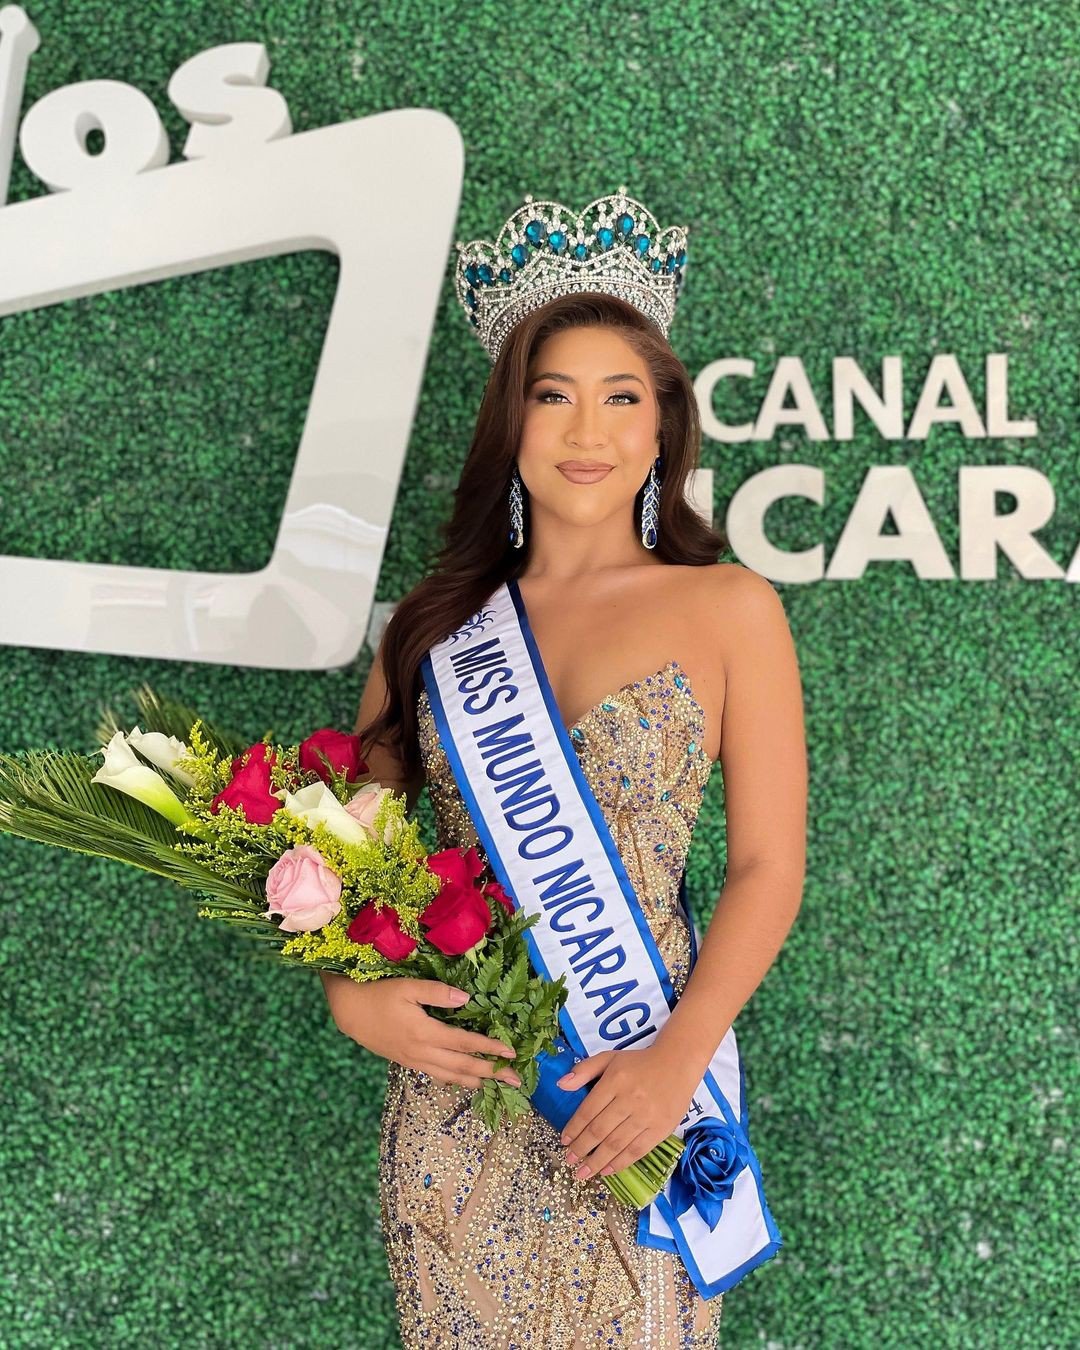 Người đẹp Julia Aguilar đã đăng quang
ngôi vị cao nhất trong chung kết Hoa hậu Thế giới Nicaragua 2024
hôm 1/6. Cô đại diện Nicaragua tham dự cuộc thi Hoa hậu Thế giới
lần thứ 72 tổ chức vào năm sau.